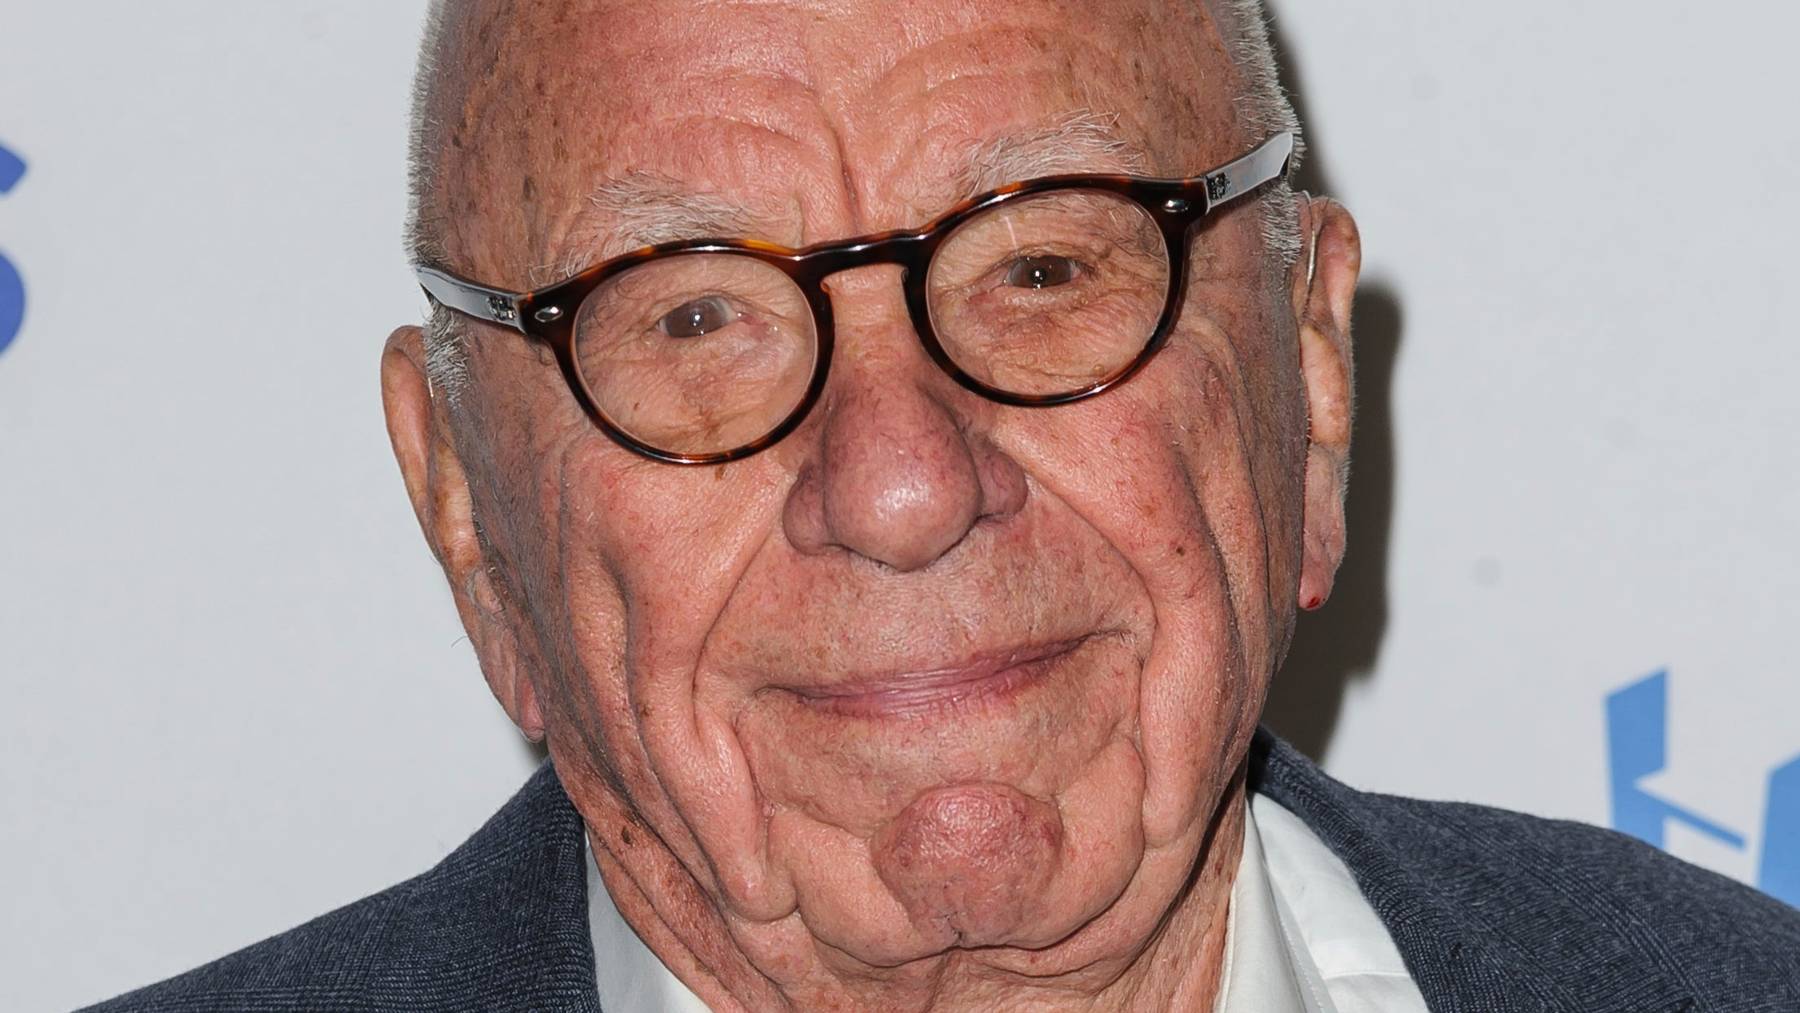 Rupert Murdoch ist Kopf eines Medienimperiums, zu dem unter anderem der amerikanische Sender Fox News gehört.